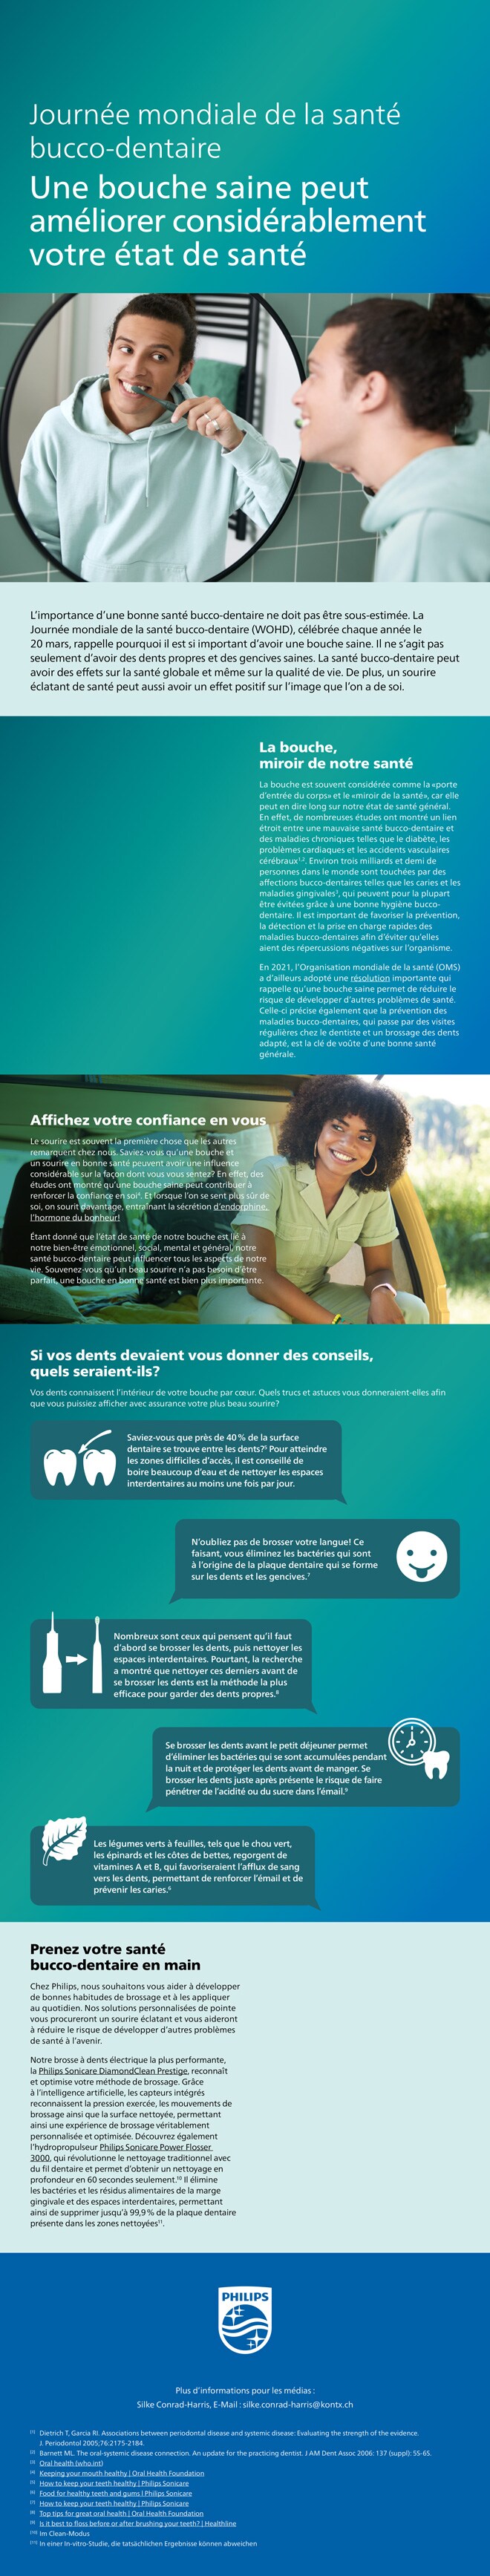 Themensheet: Der Internationale Tag der Mundgesundheit download pdf